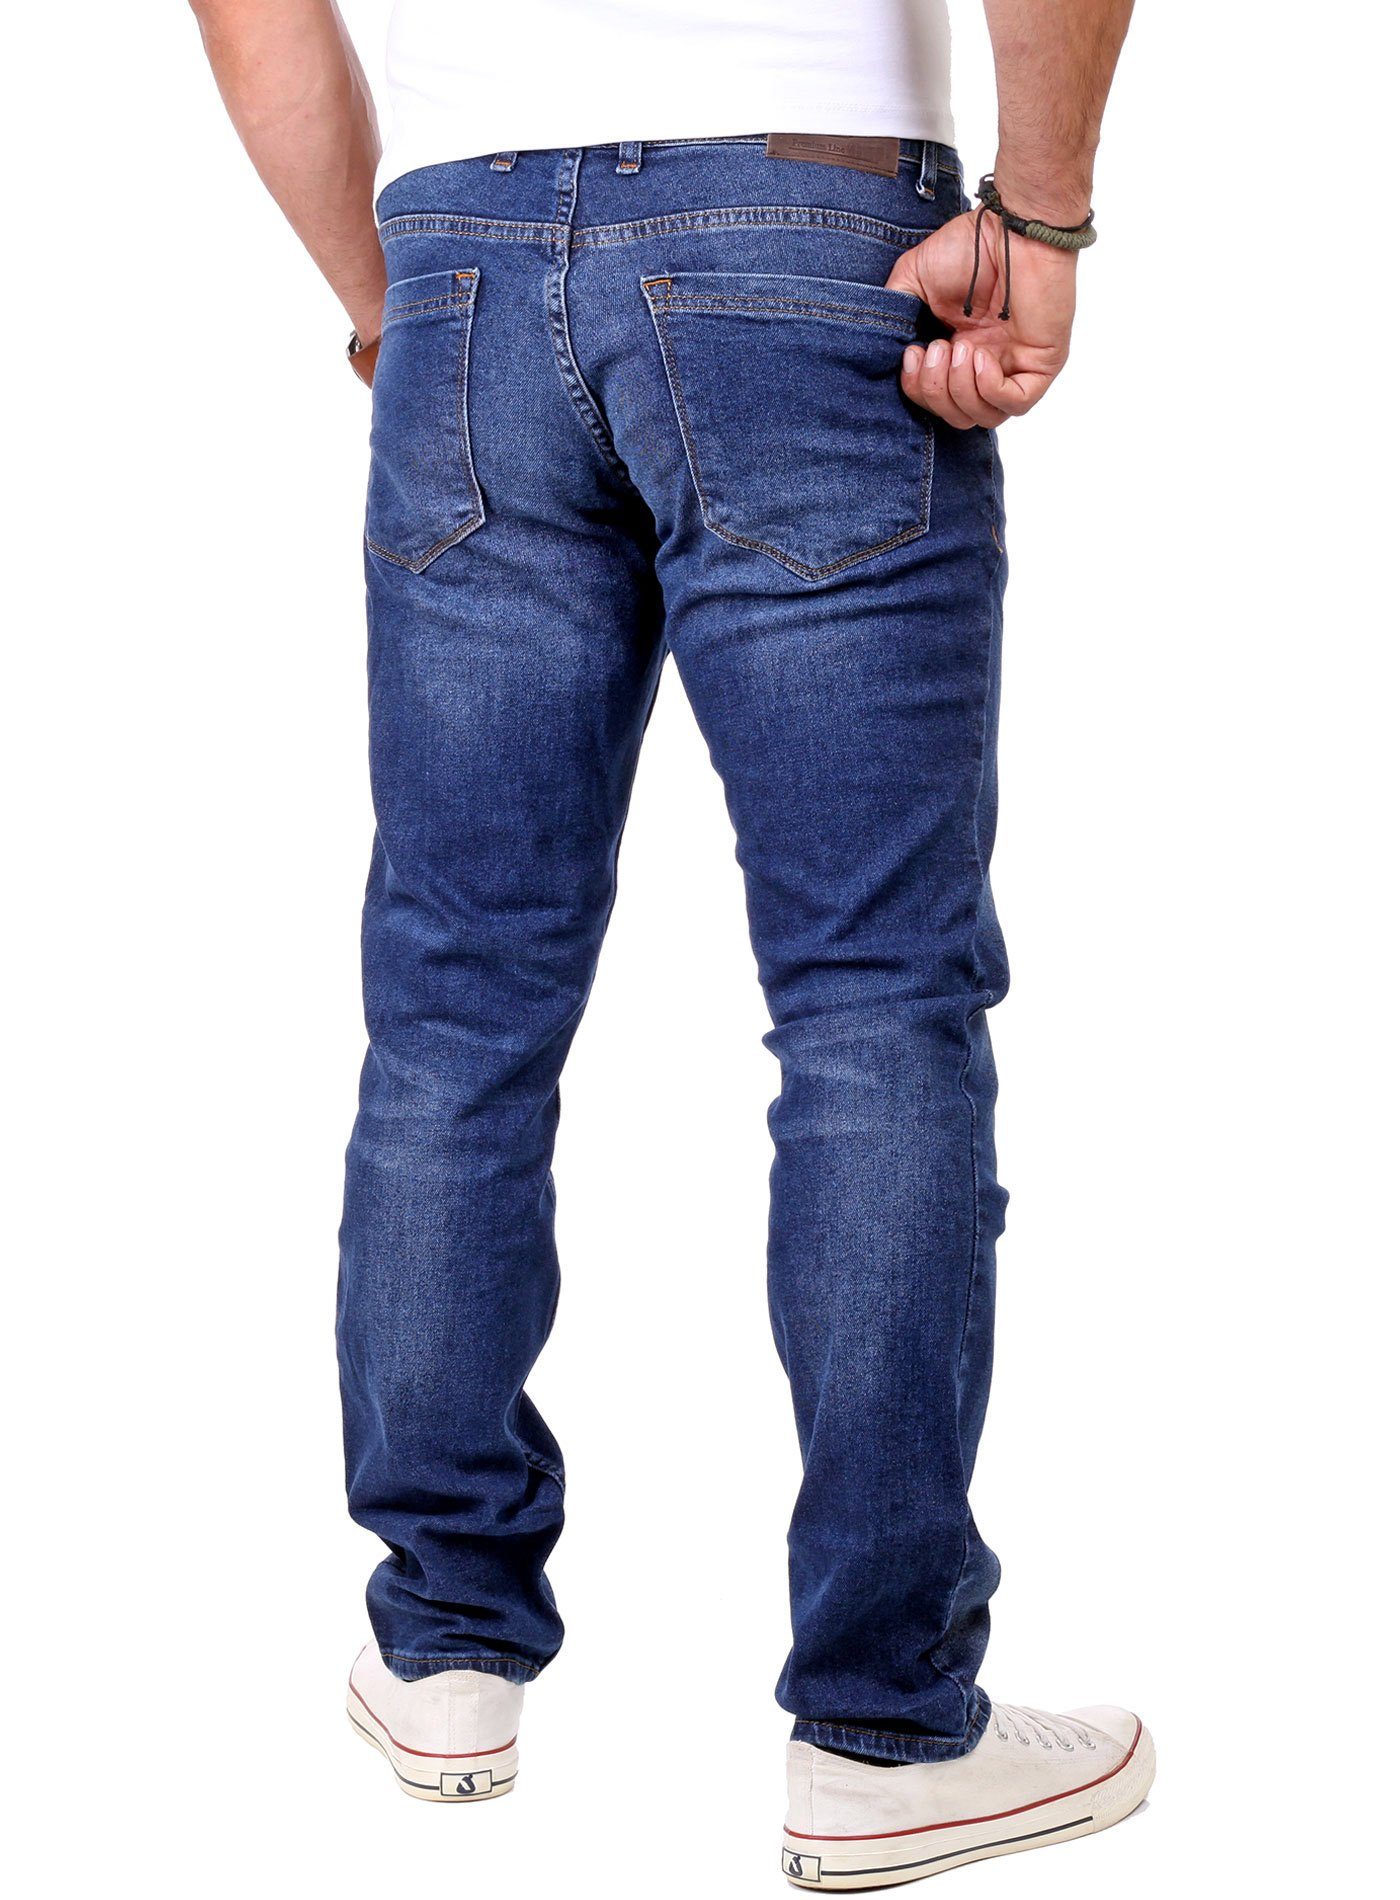 Reslad Destroyed-Jeans Reslad Look blau Destroyed Jeans-Hose Herren Fit Slim Denim Jeans Stretch Destroyed Slim Look Jeans Fit